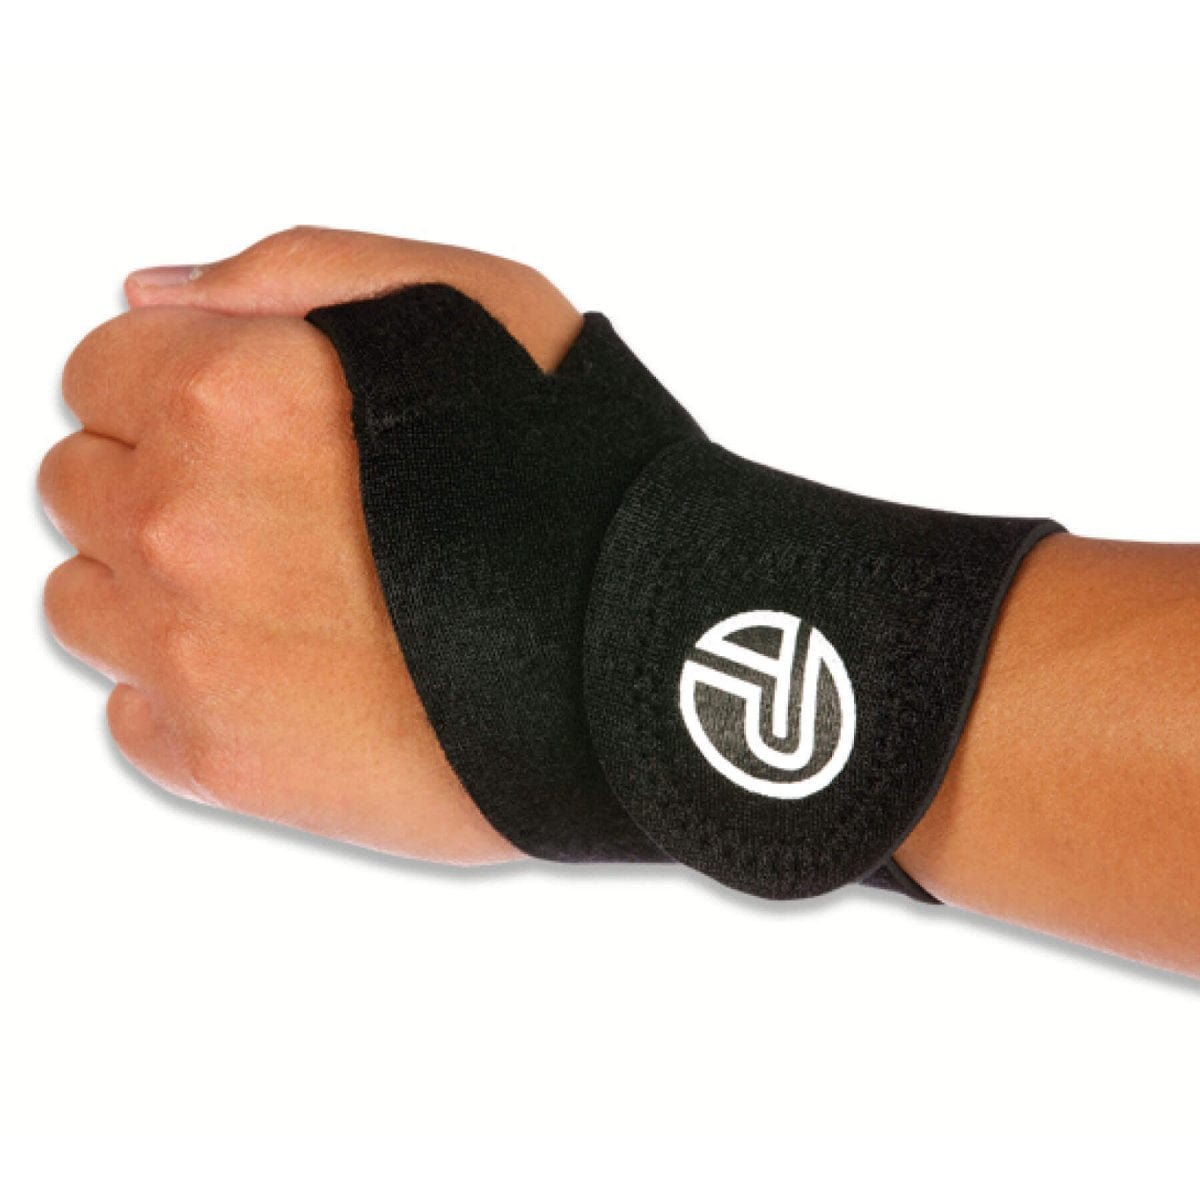 Pro-Tec Wrist Wrap | Tennis Wrist Wrap